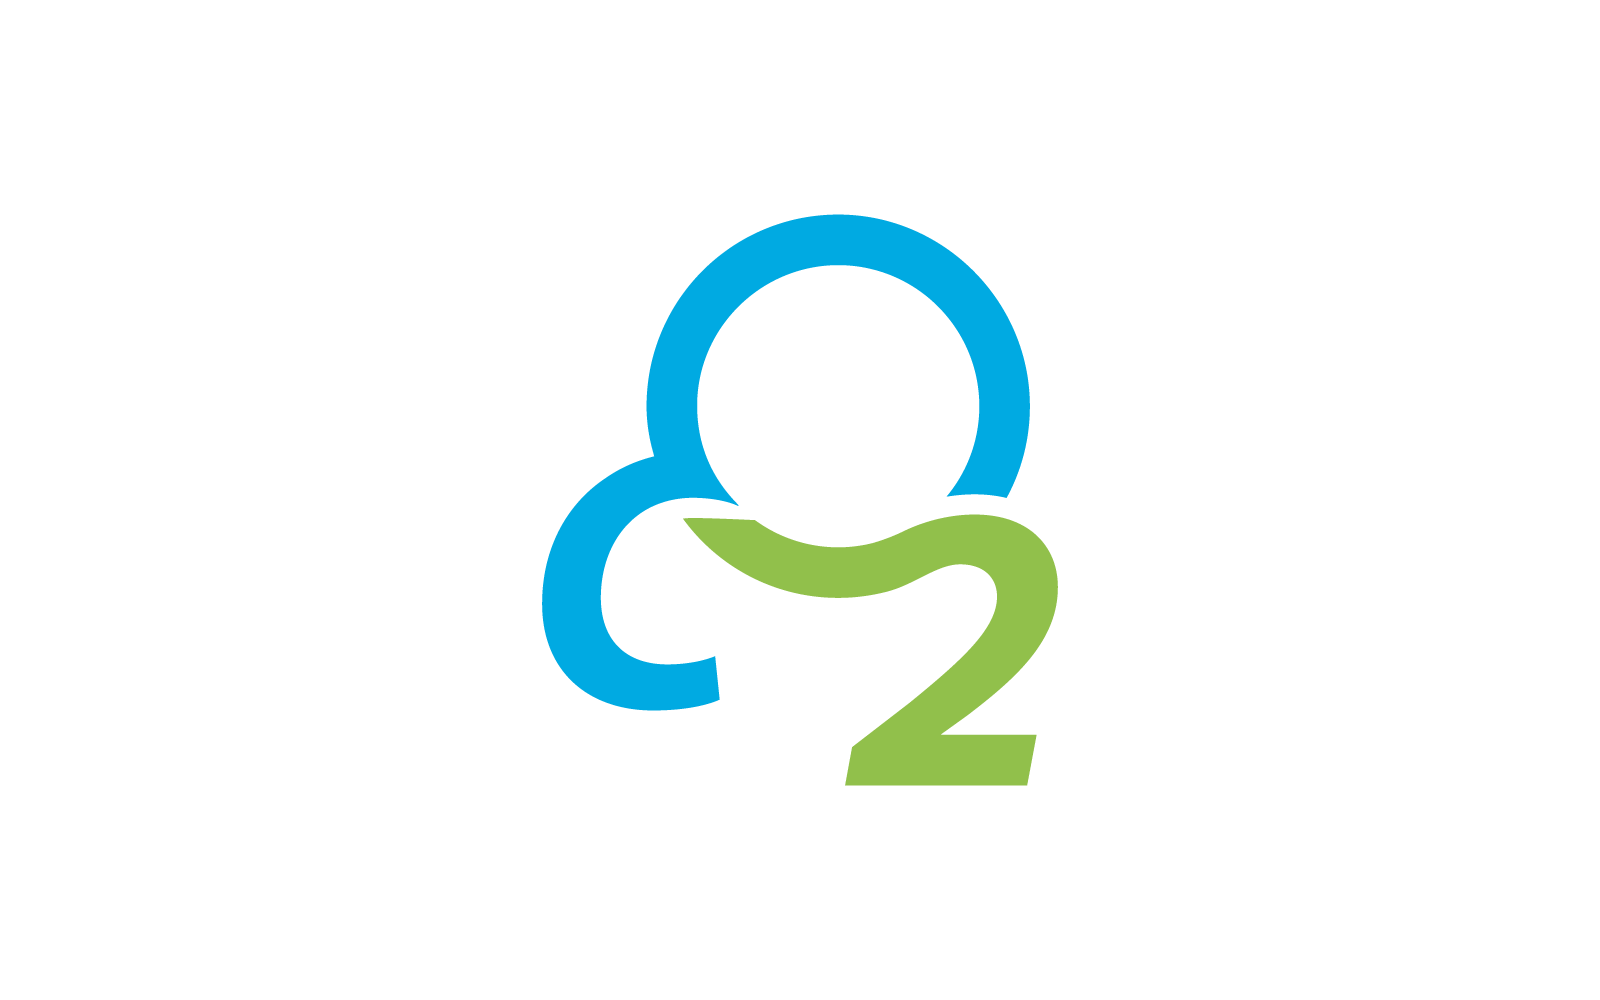 Co2 Carbon dioxide logo vector design Logo Template